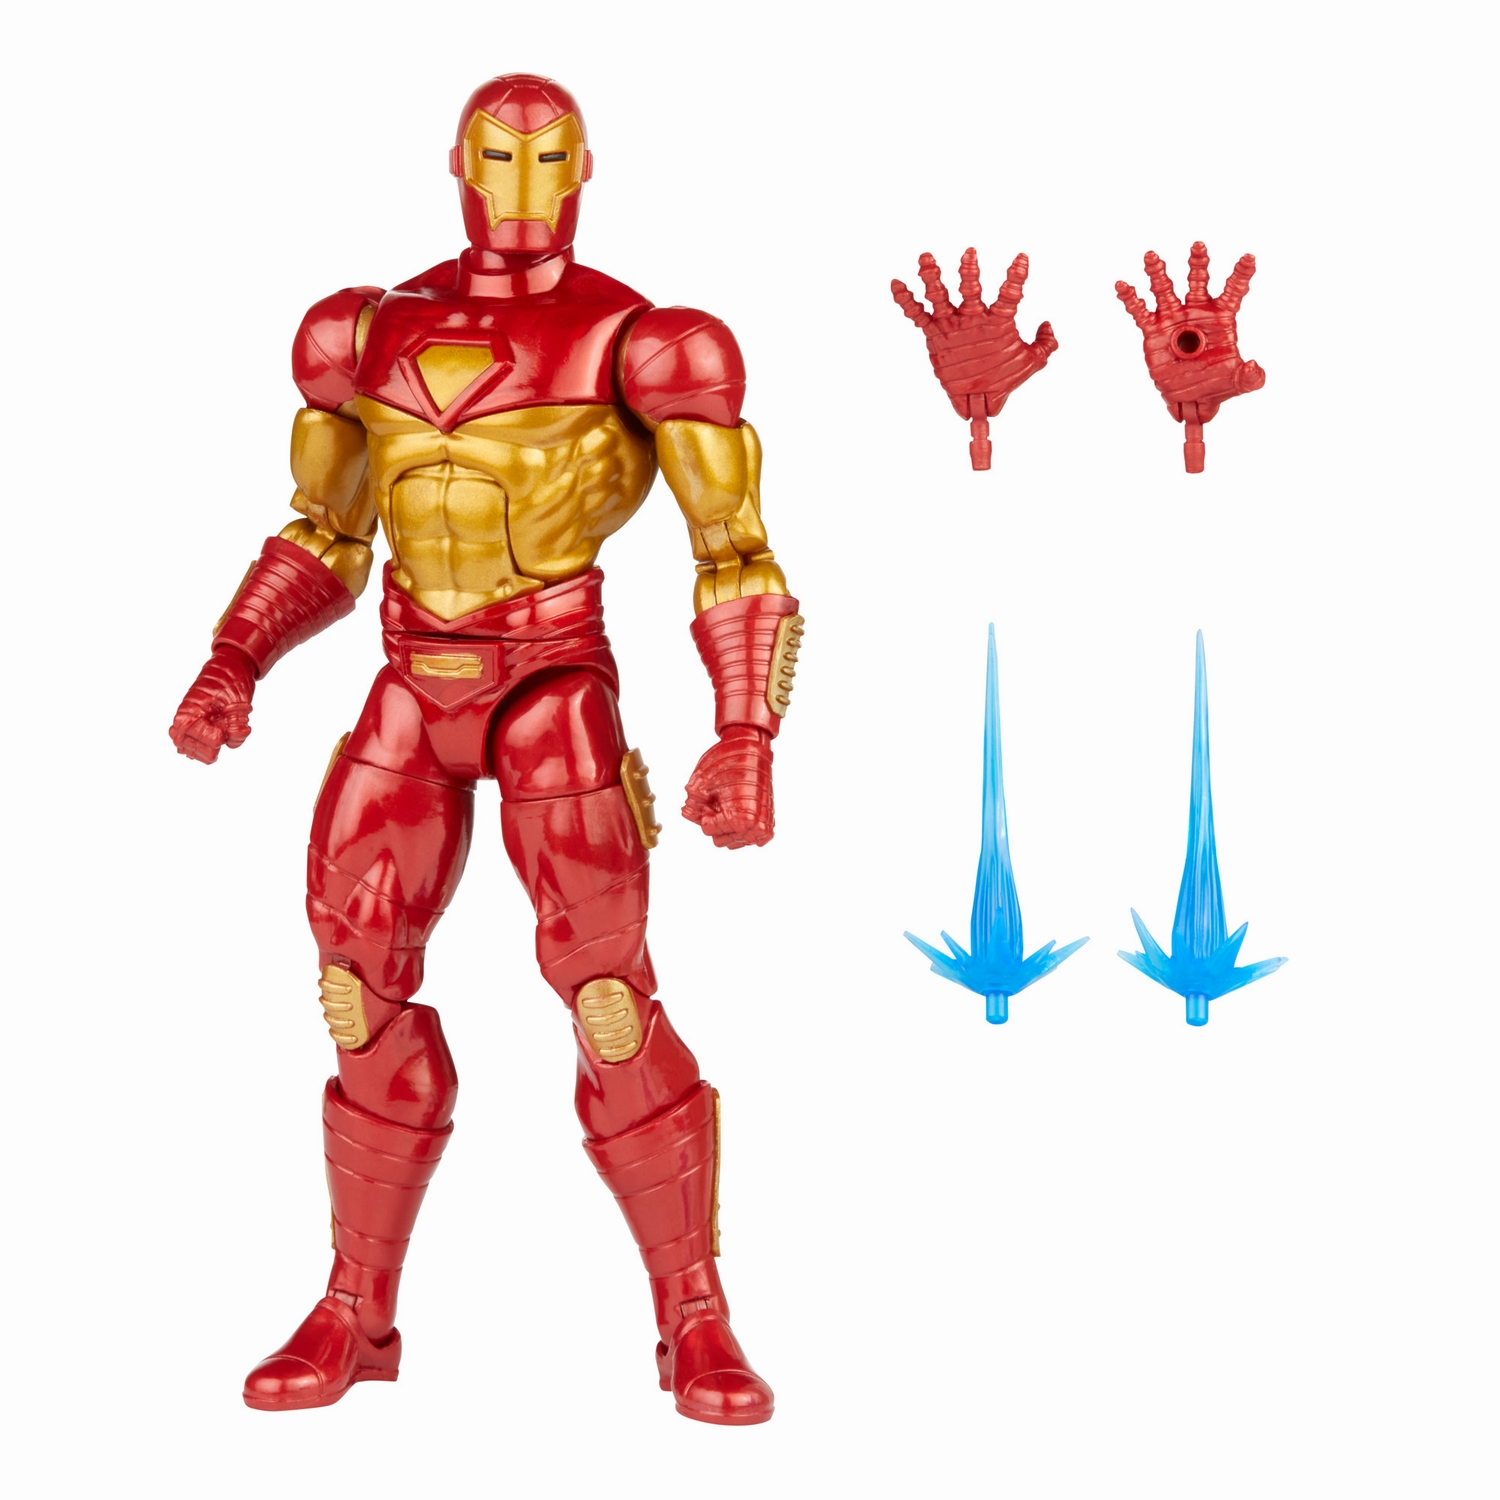 MARVEL LEGENDS SERIES 6-INCH IRON MAN Figure Assortment - Modular Iron Man - oop (3).jpg